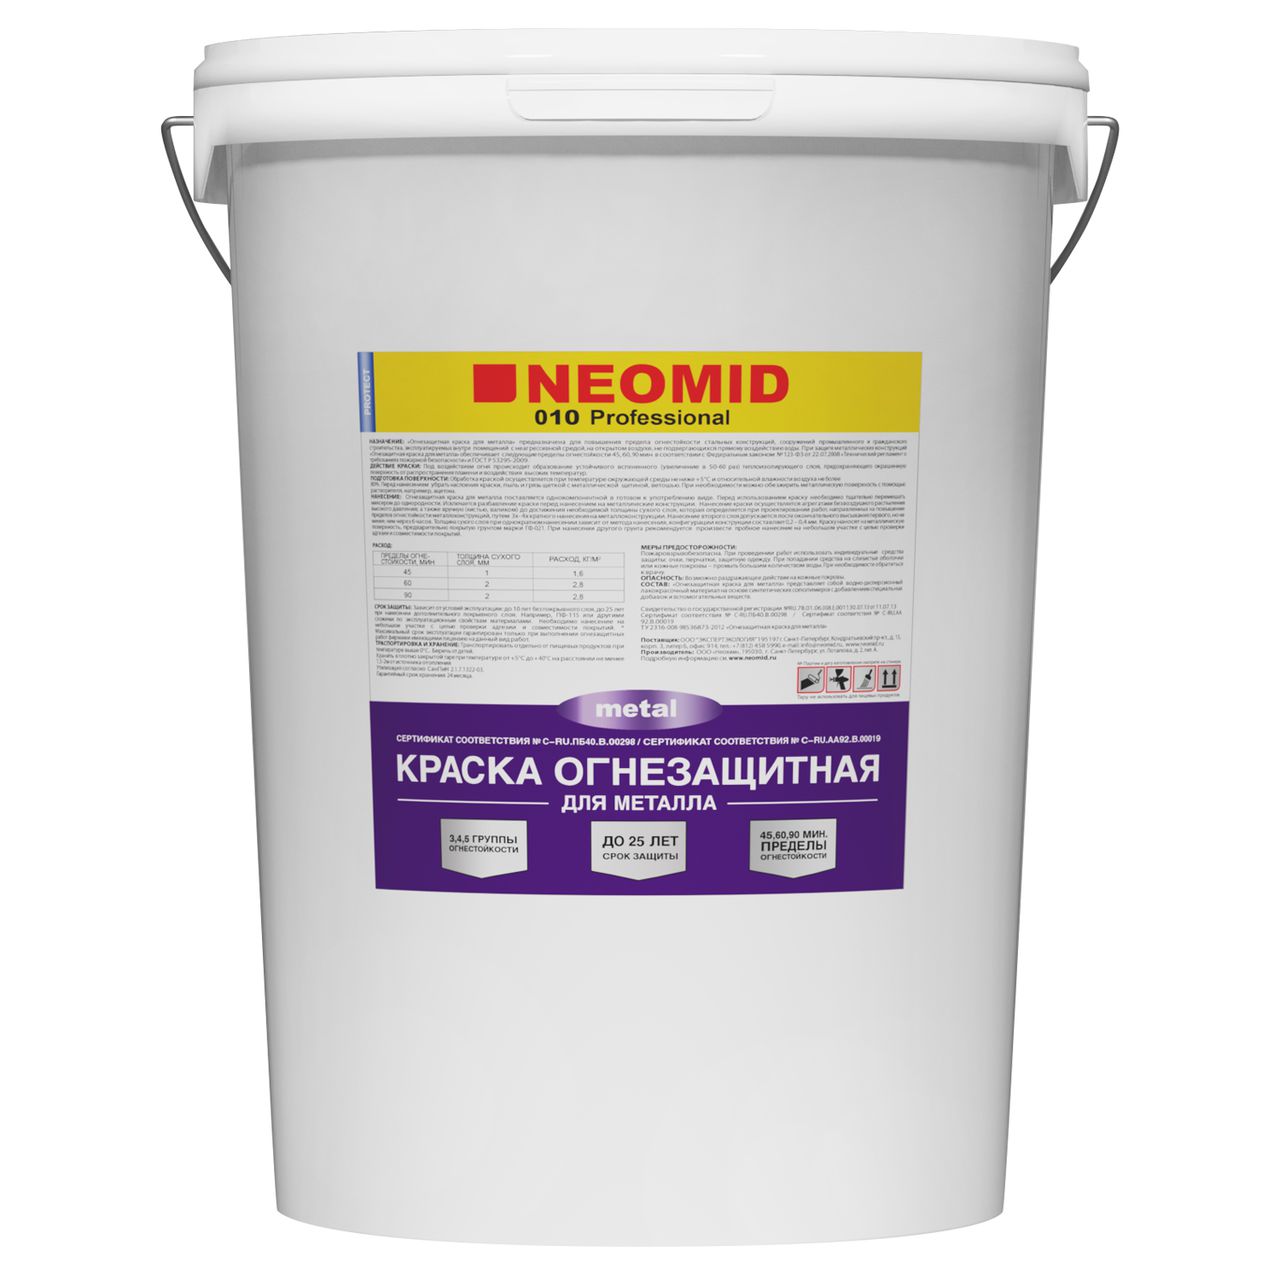 Купить огнезащитная краска для металла neomid (неомид) от официального дилера NEOMID (НЕОМИД)